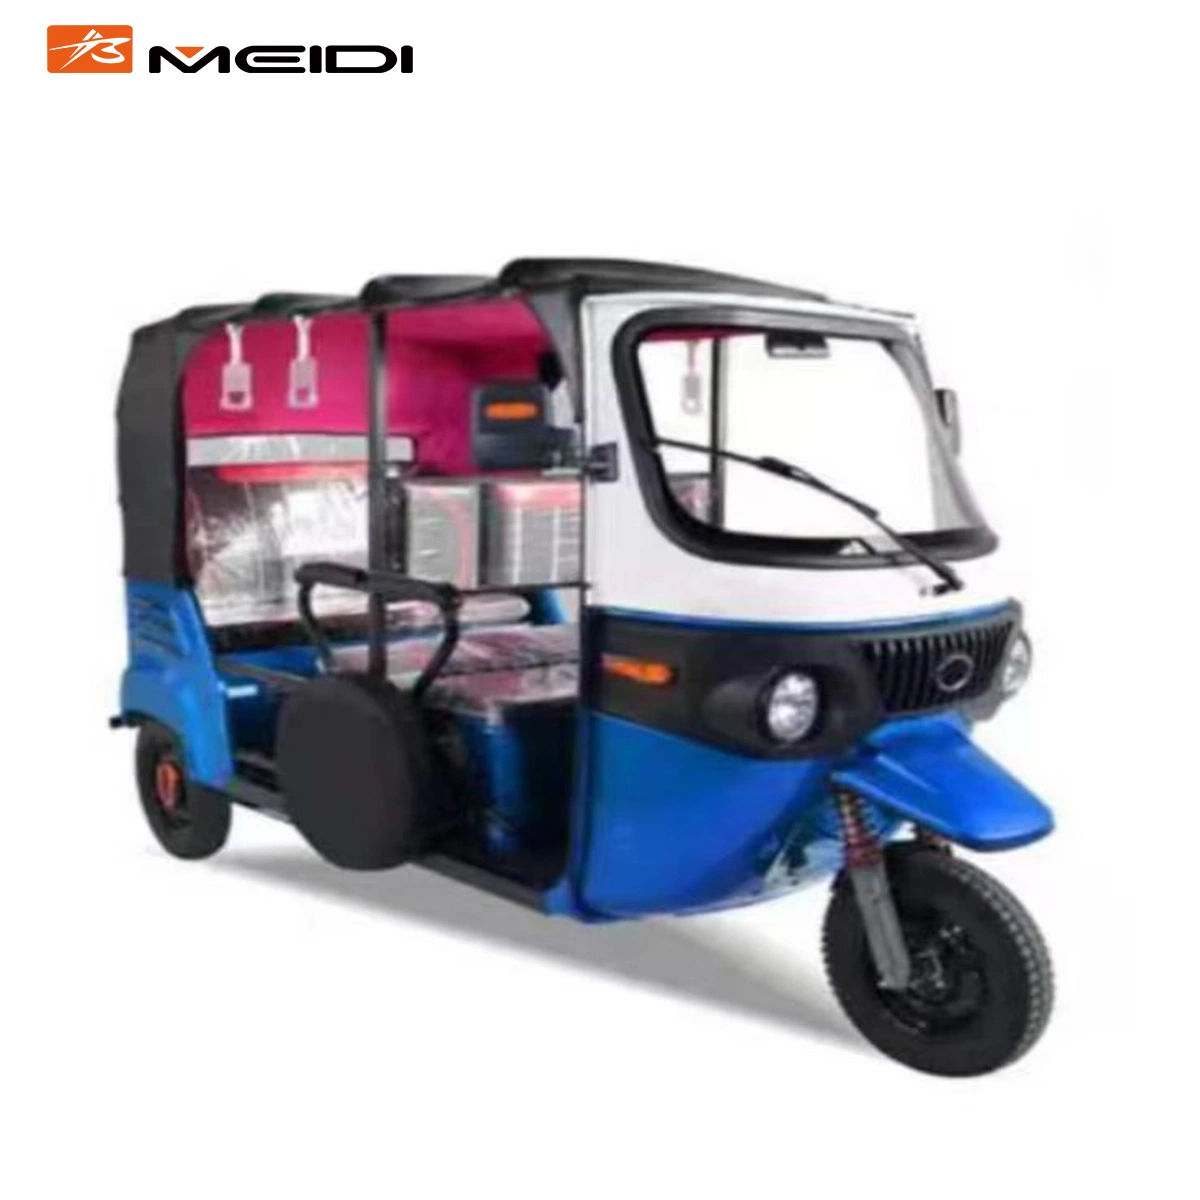 Meidi Fabricant Chinois Populaire Bajaj Moto Électrique Auto Rickshaw pour Passagers